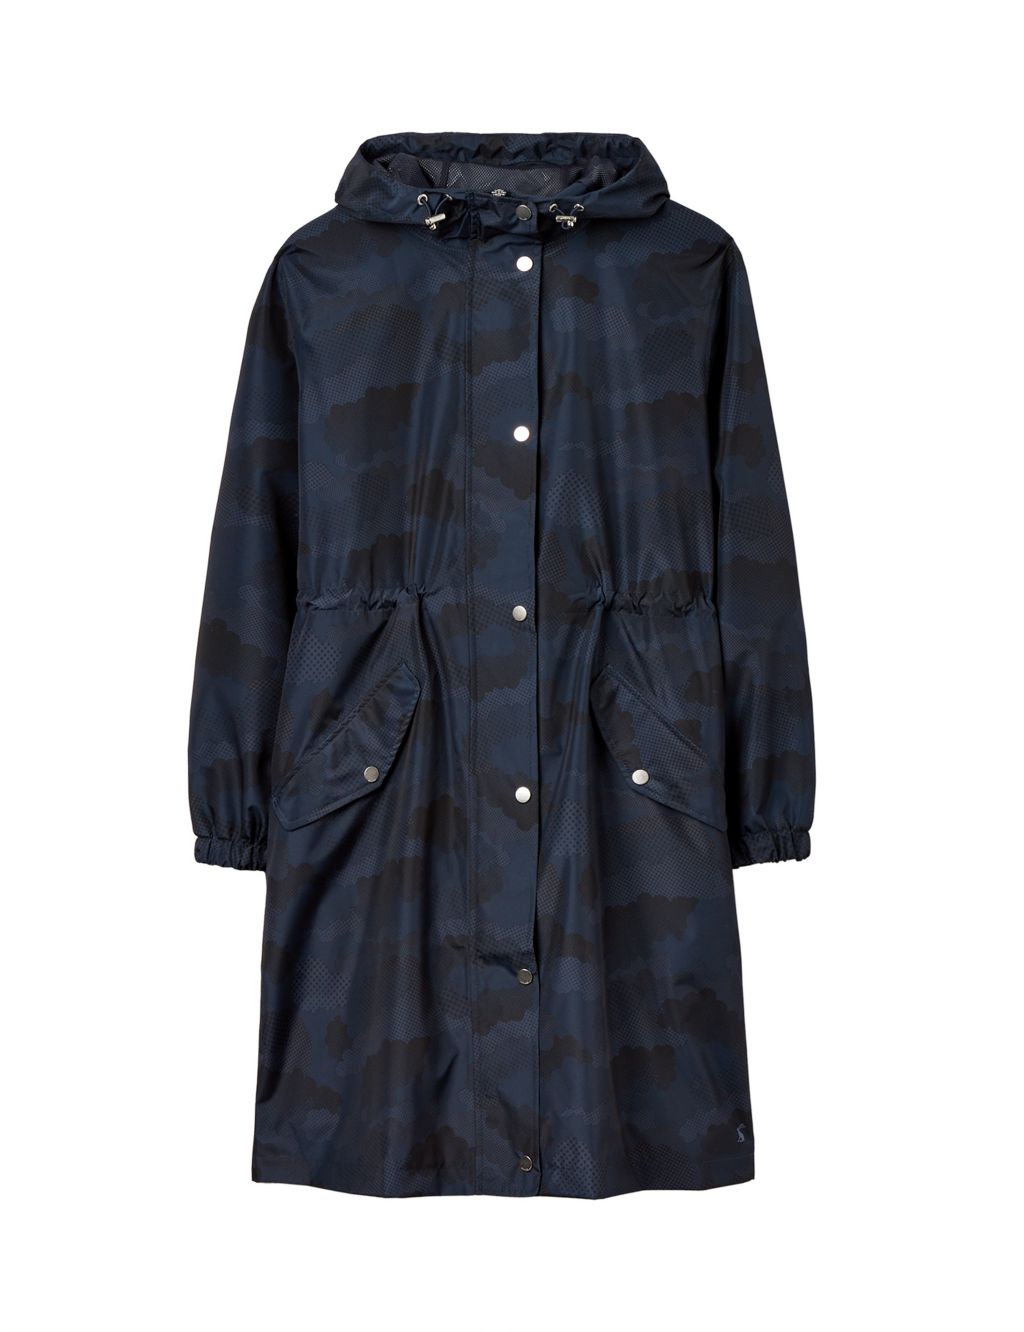 Waterproof Printed Hooded Longline Raincoat | Joules | M&S